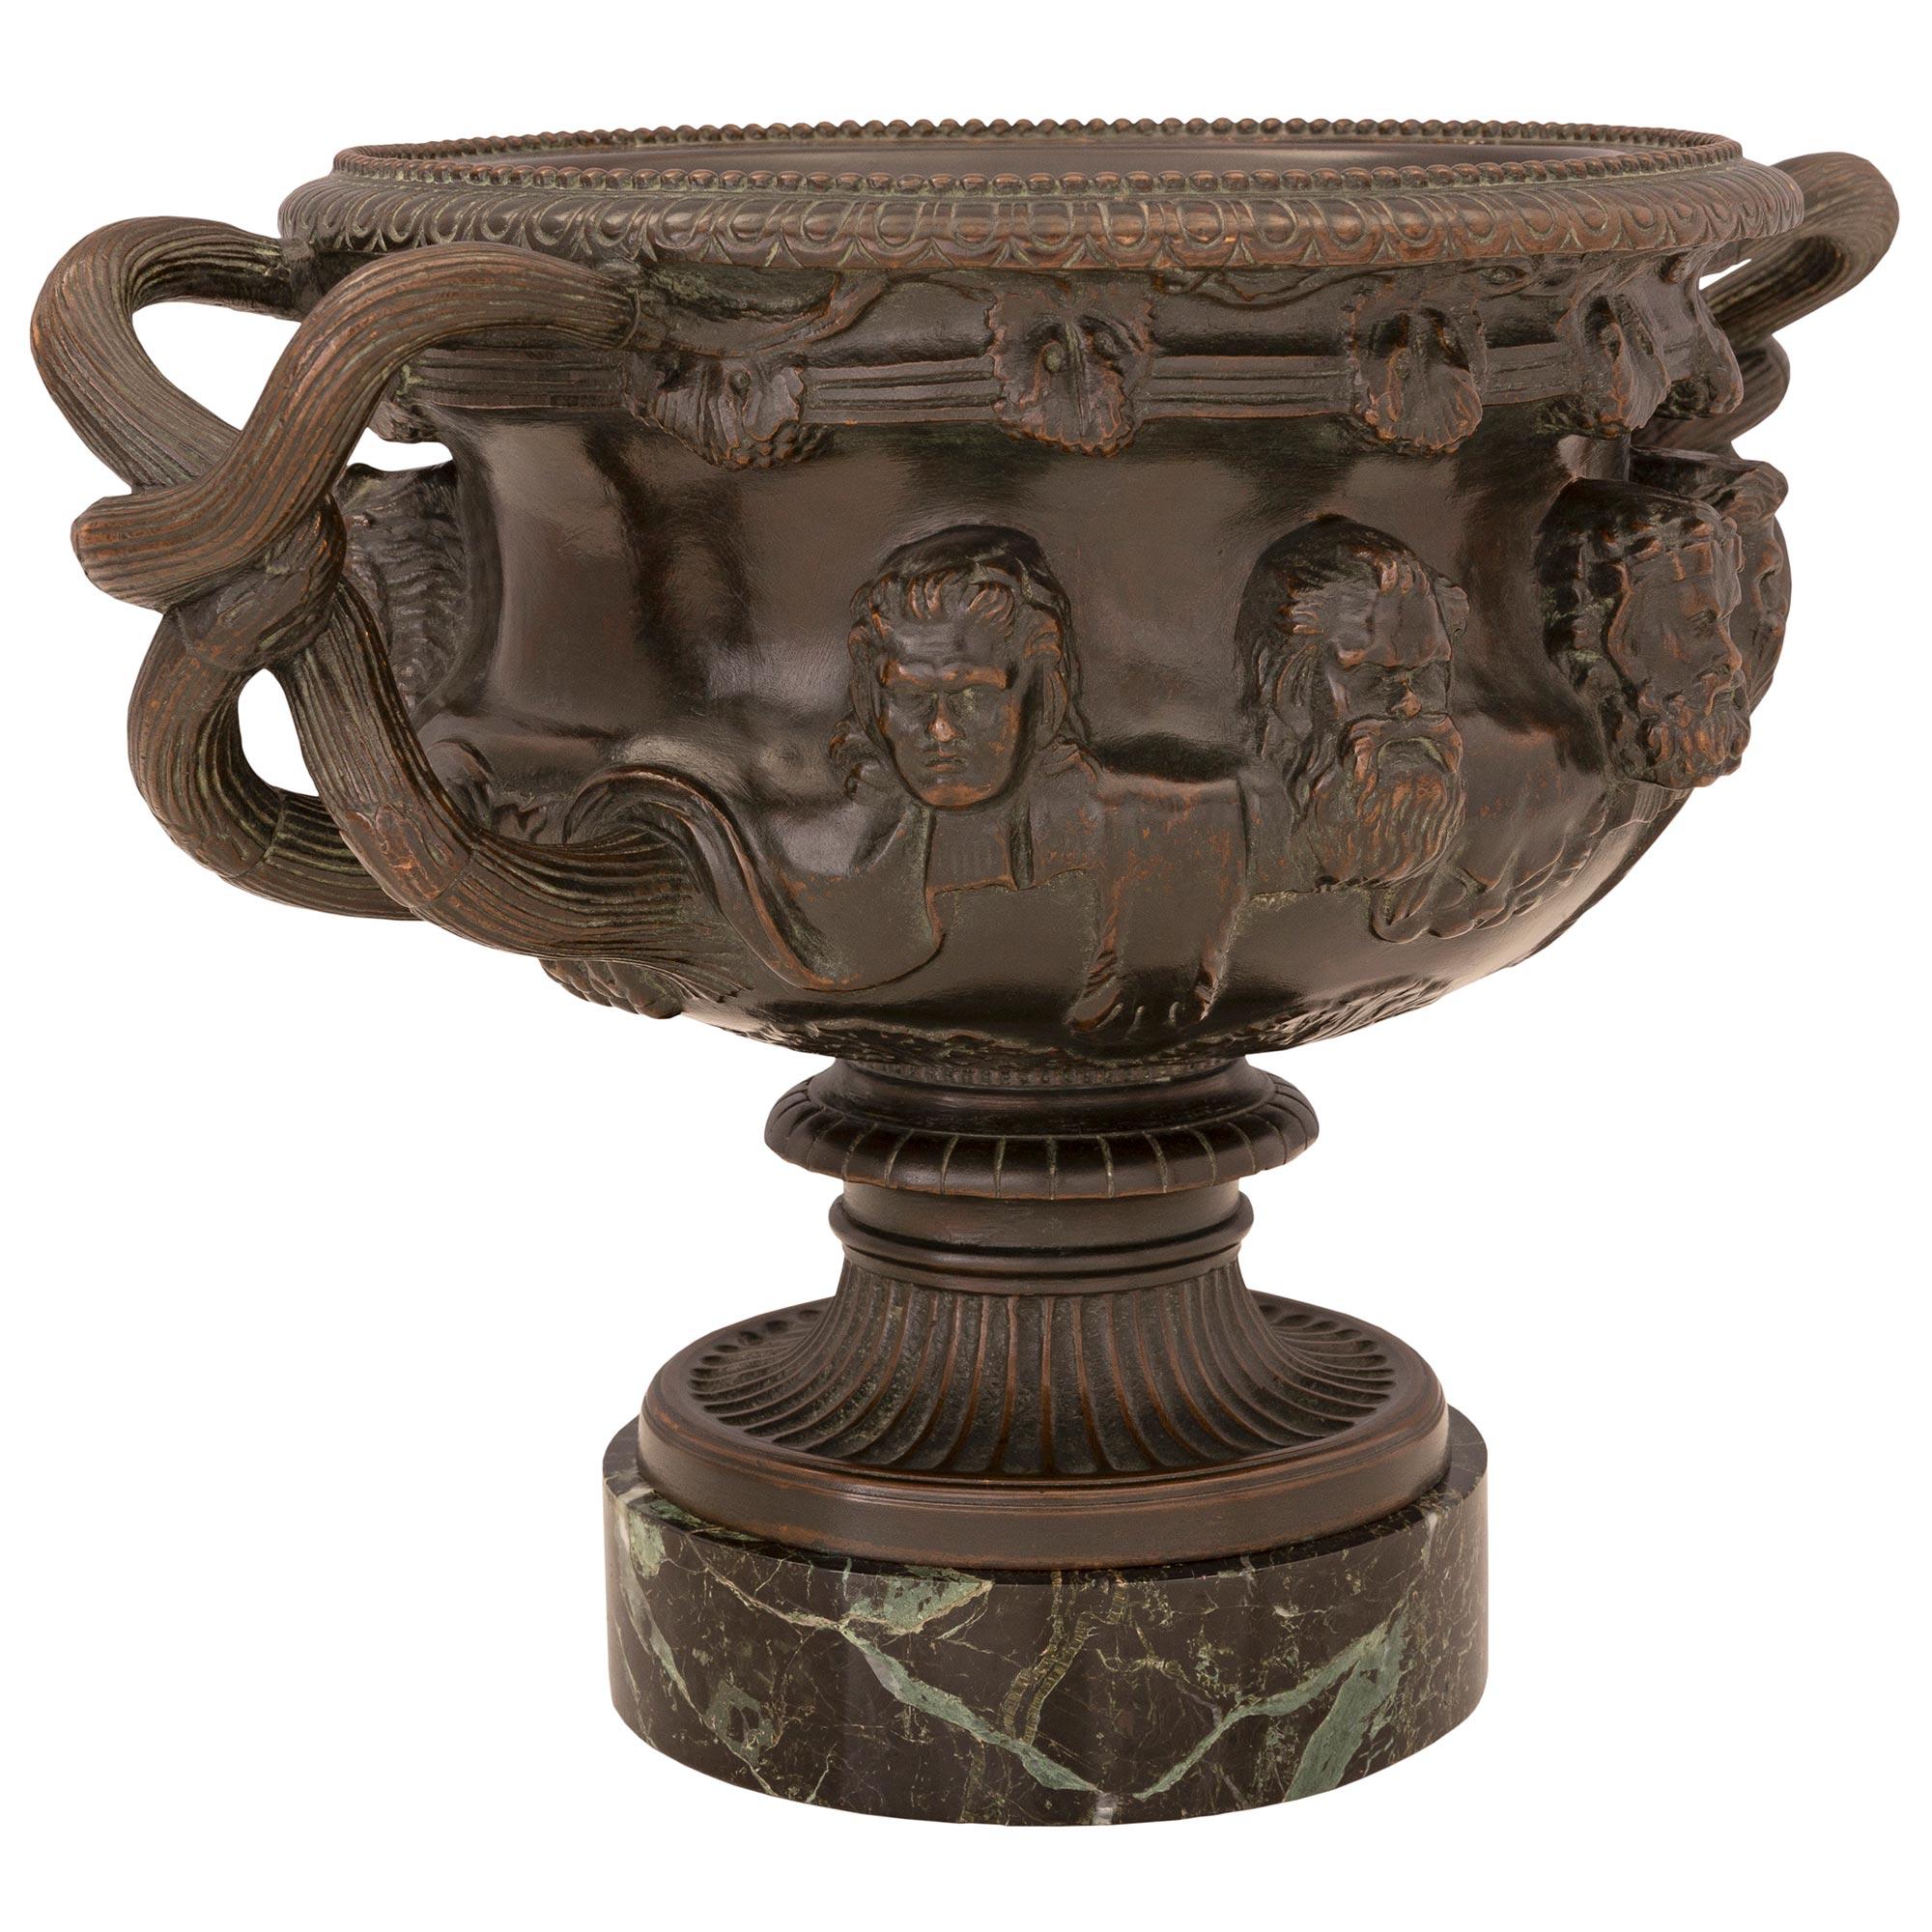 Ein hübsches Paar französischer Tazzas aus patinierter Bronze und Marmor Vert de Patricia aus dem 19. Jahrhundert, signiert F. Barbedienne und nach der berühmten Albani-Vase. Jede Tazza steht auf einem runden Marmorsockel aus Vert de Patricia, der